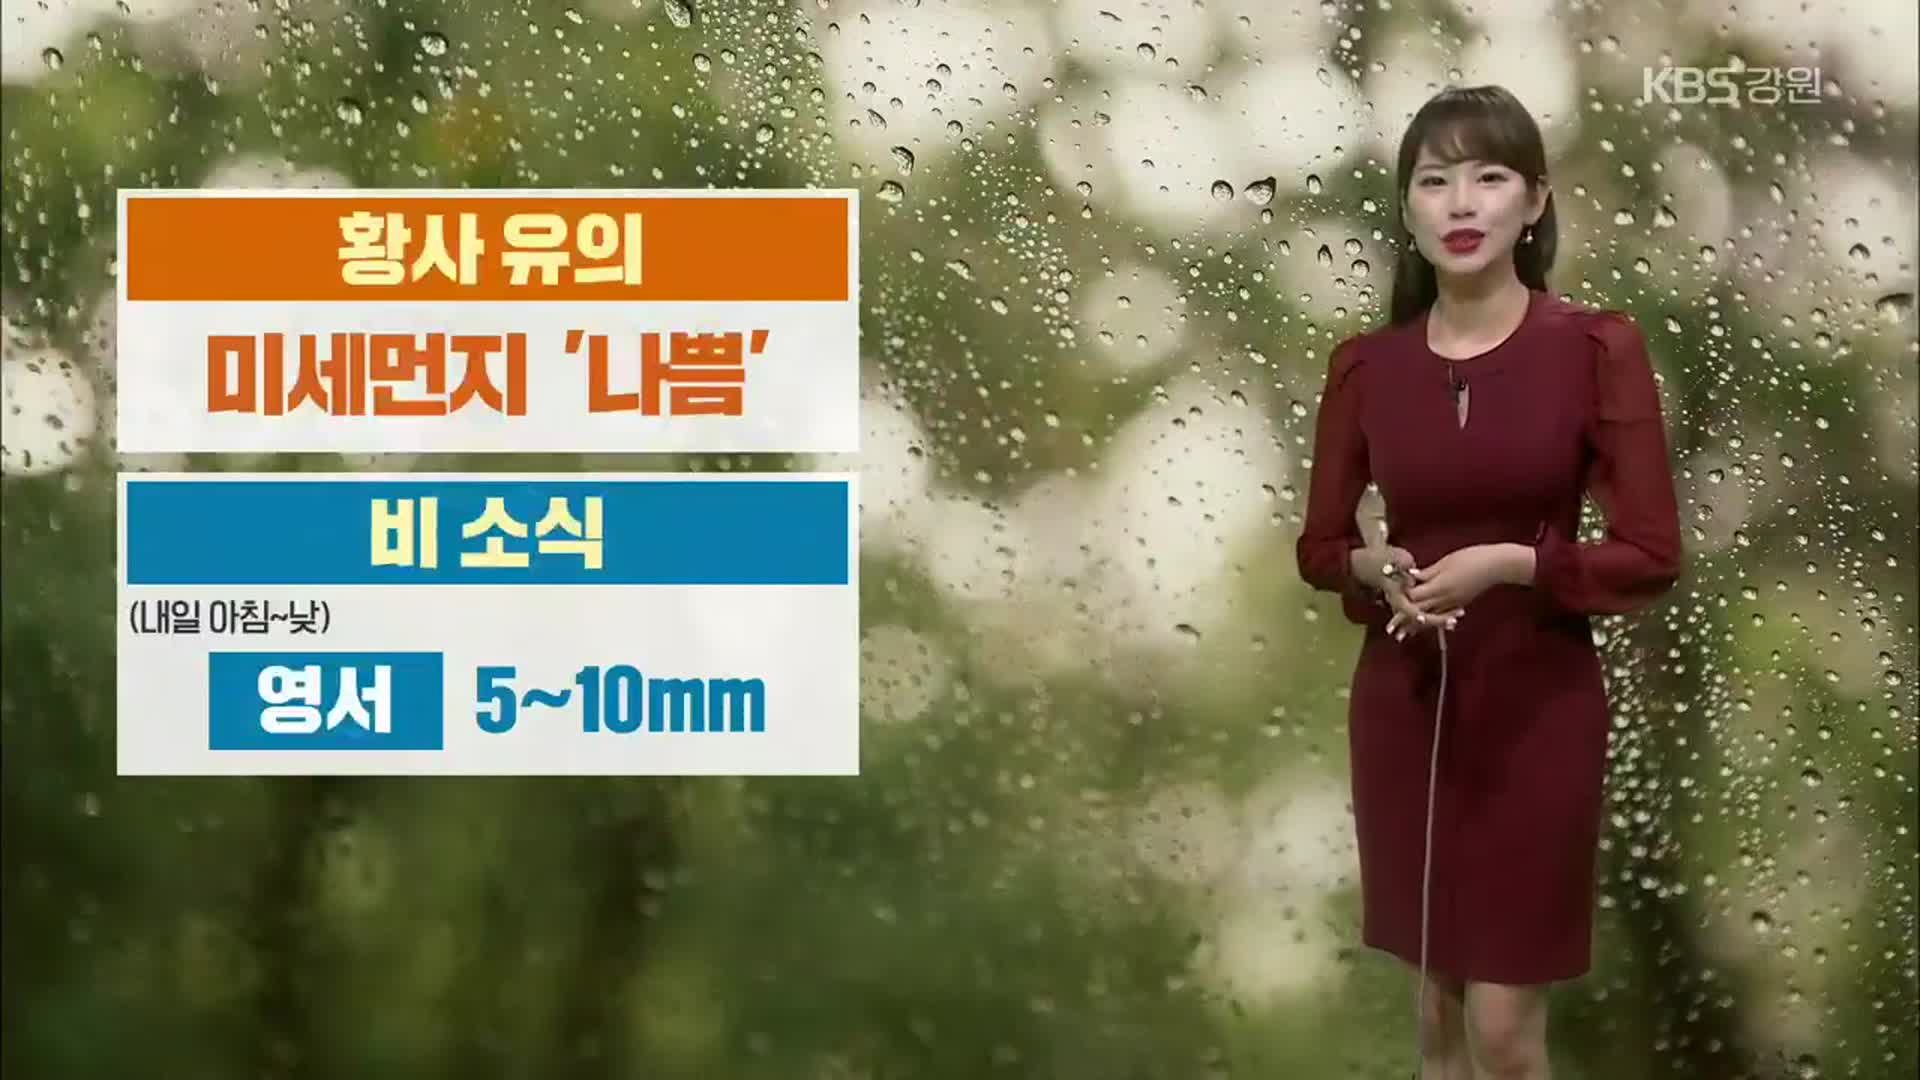 [날씨] 강원 내일 미세먼지 ‘나쁨’…영서지역 5~10mm 비